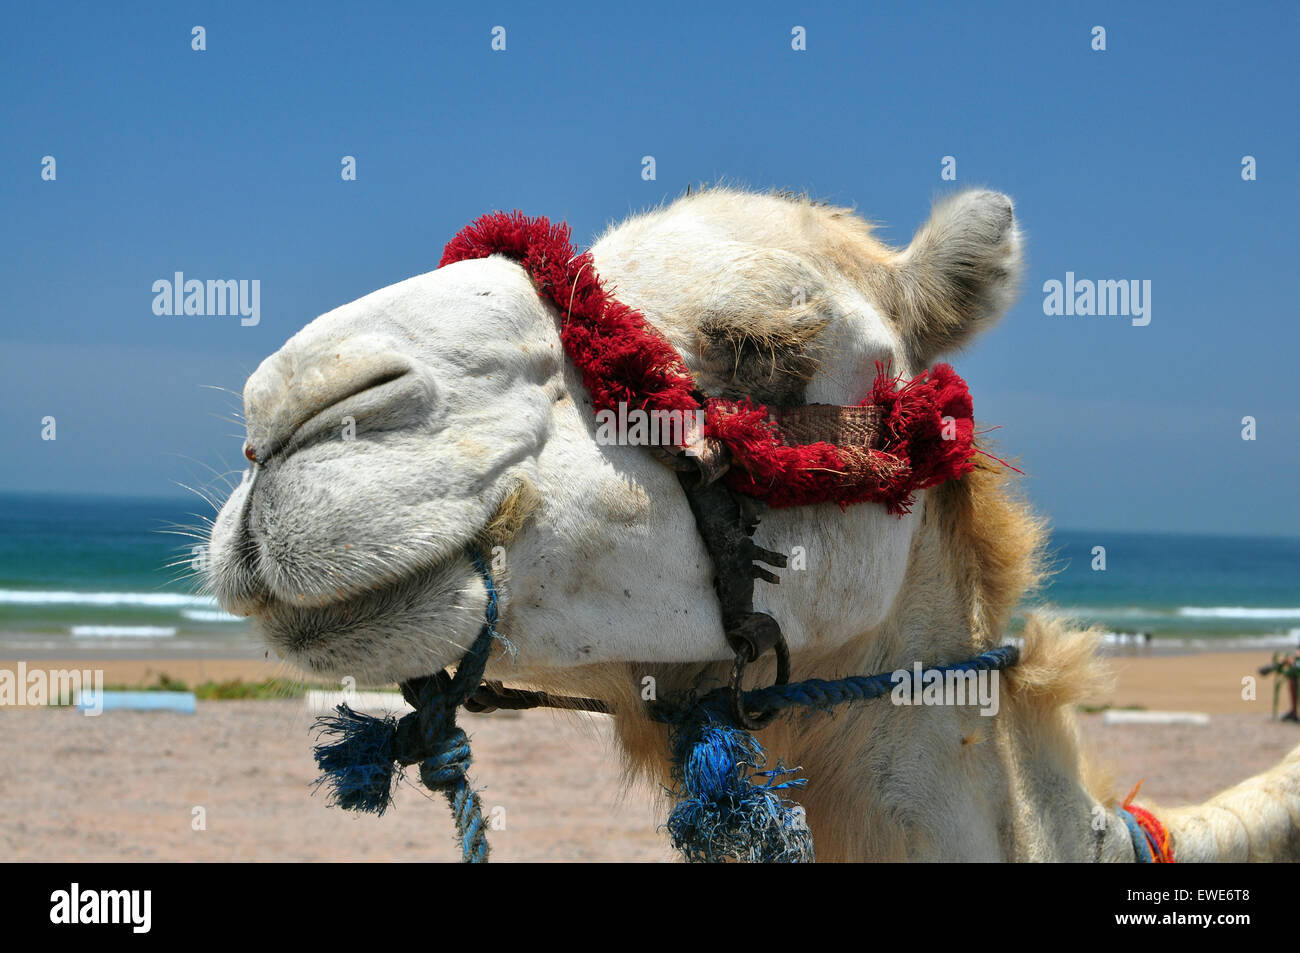 camel face animal head morocco summer beach Stock Photo